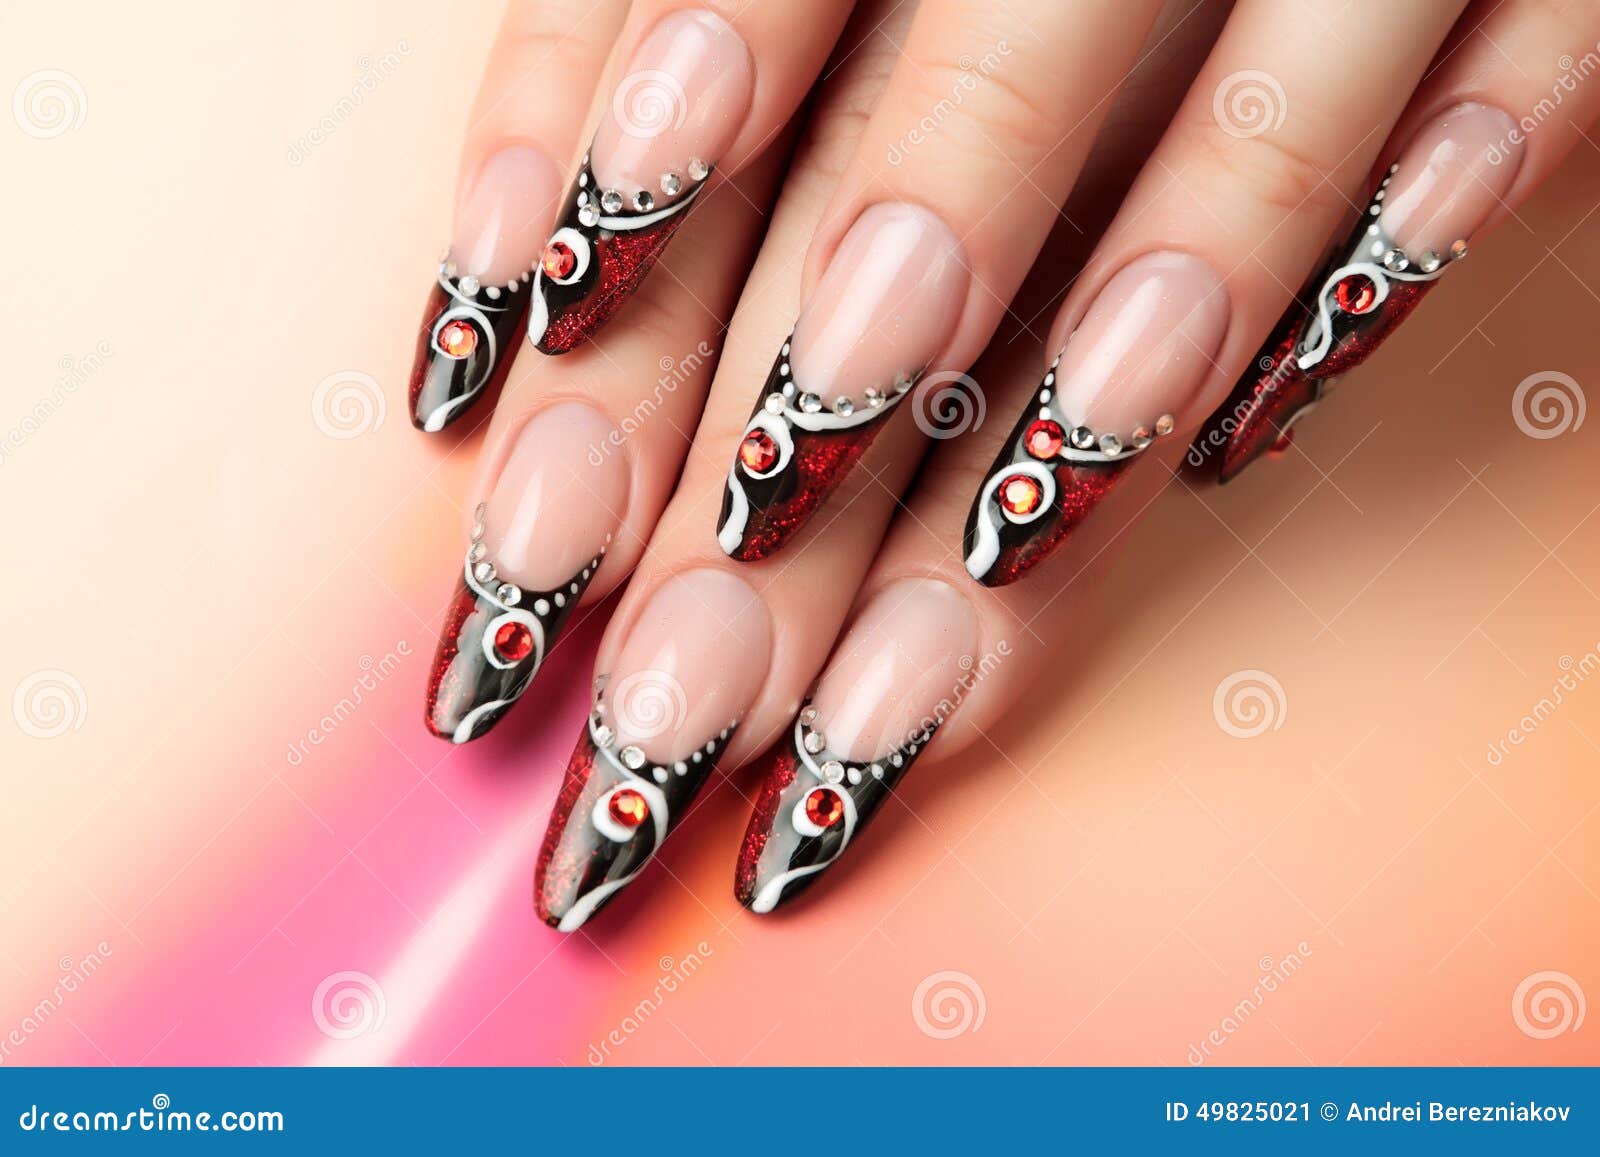 red and black nails | Red nails, Gel nails, Long nails